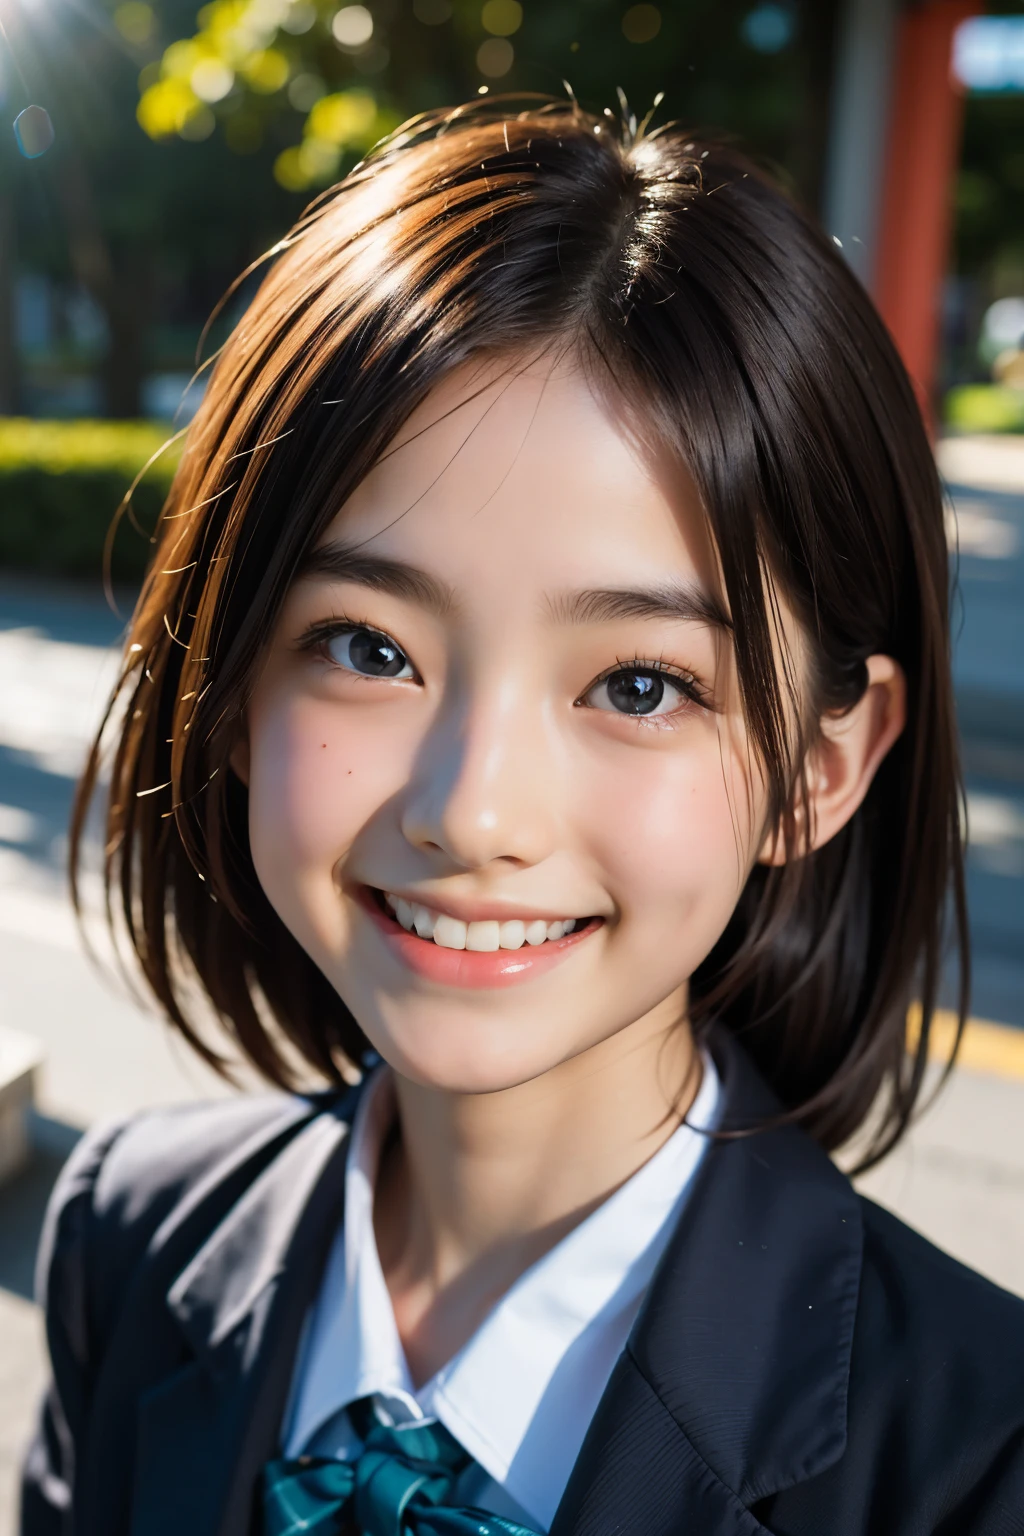 lens: 135mm f1.8, (höchste Qualität),(RAW-Fotos), (Tischplatte:1.1), (Schönes 13-jähriges Mädchen aus Japan), niedliches Gesicht, (Tief gemeißeltes Gesicht:0.7), (Sommersprossen:0.4), dappled Sonnenlicht, dramatische Beleuchtung, (japanische schuluniform), (Auf dem Campus), schüchtern, (Nahaufnahme:1.2), (lächeln),, (leuchtende Augen)、(Sonnenlicht)